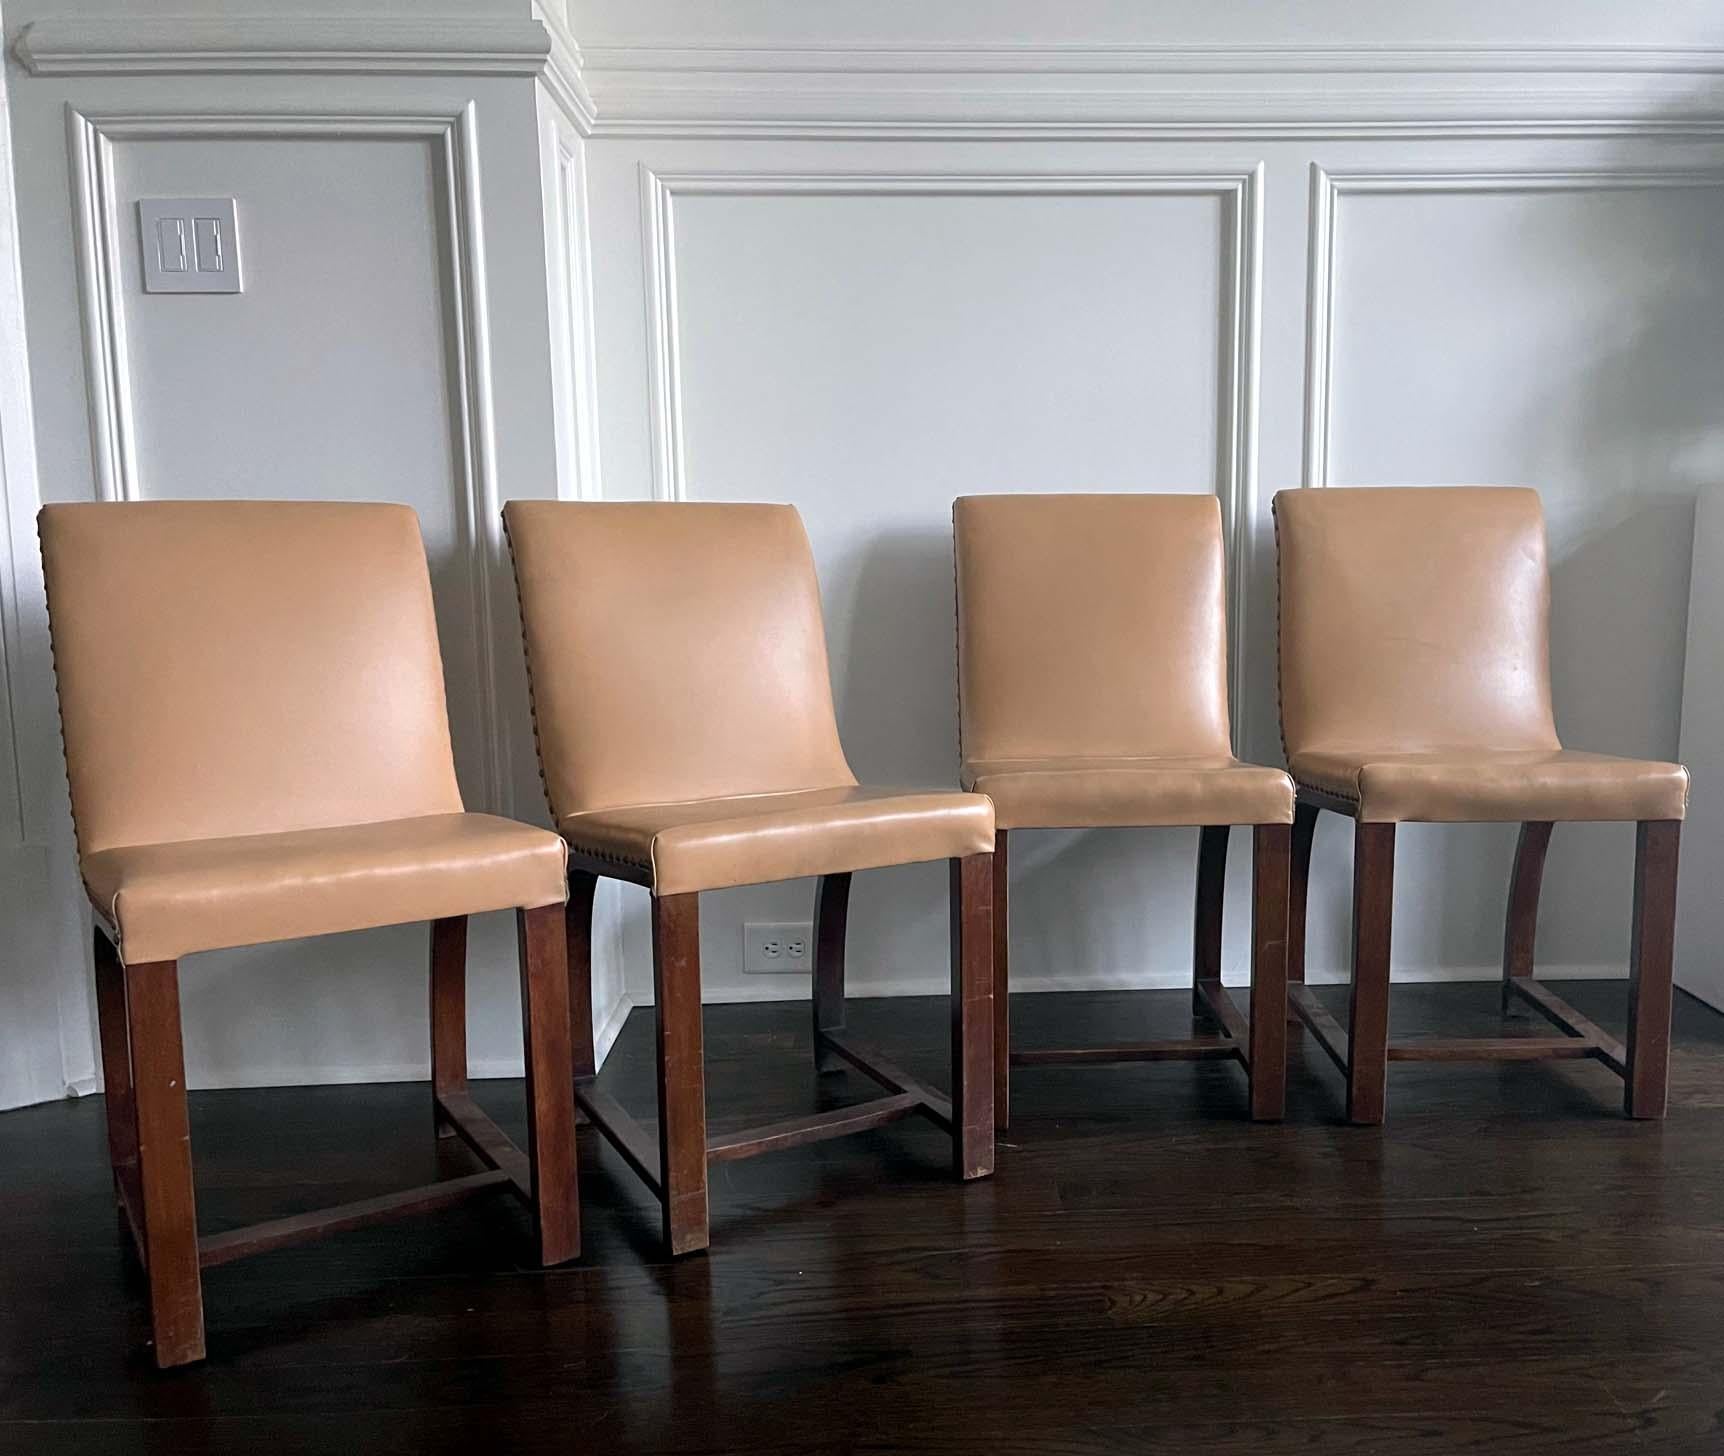 Un ensemble de quatre chaises conçues dans les années 1930 par Gilbert Rohde pour Heywood Wakefield Gardener MA. Construction en acajou avec support de dossier arqué. La tapisserie en naugahyde de couleur crème et les robinets décoratifs en laiton